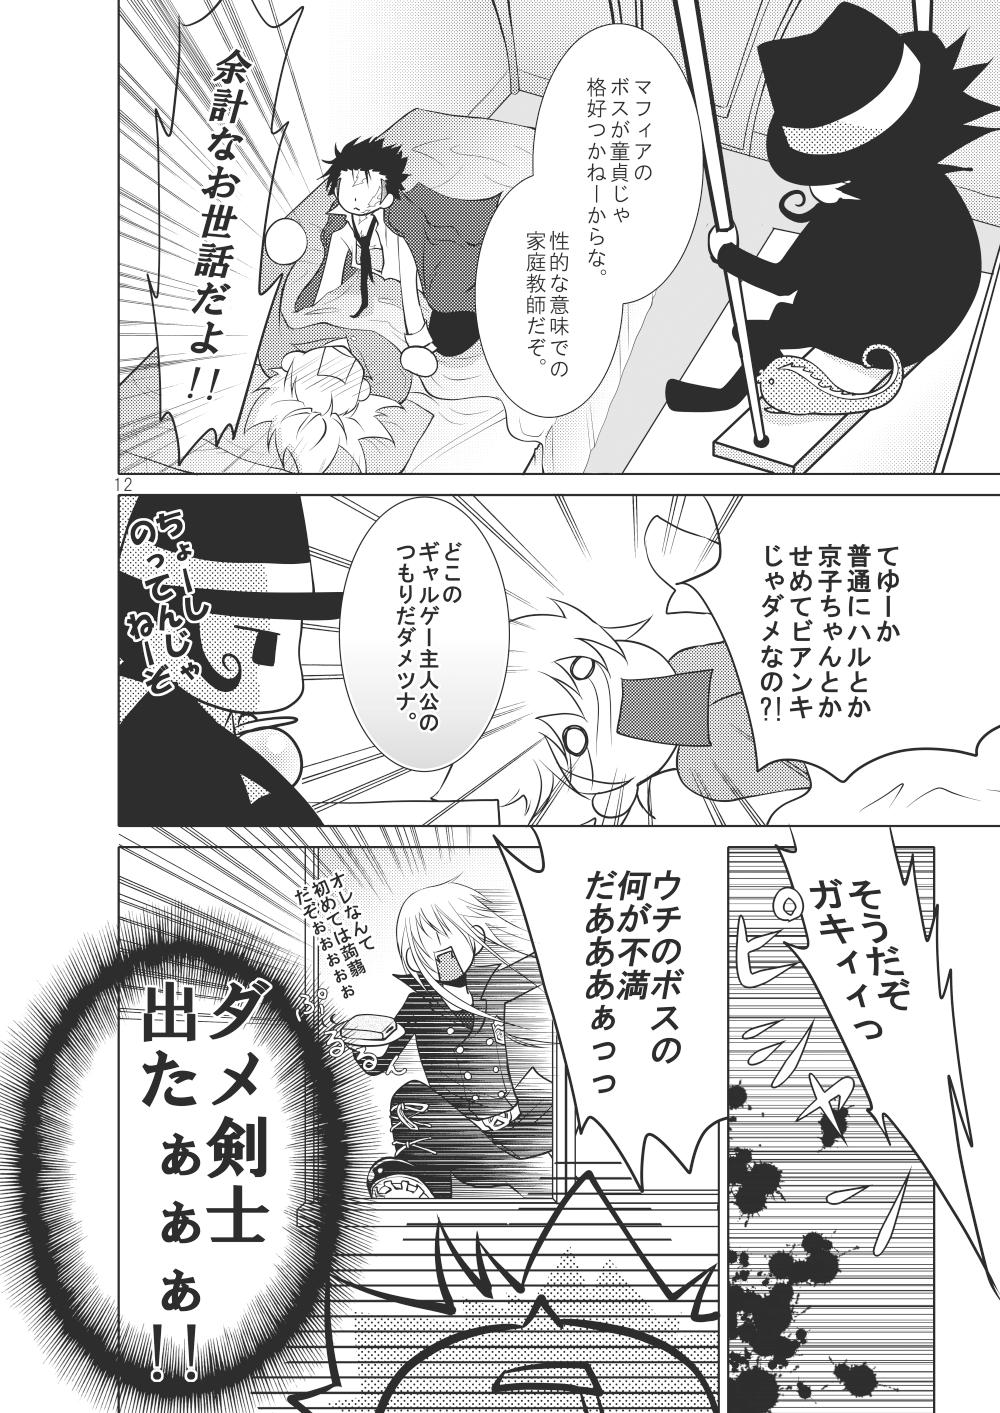 Exotic Ore no Doutei o Kimi ni Sasagu - Katekyo hitman reborn Chibola - Page 6